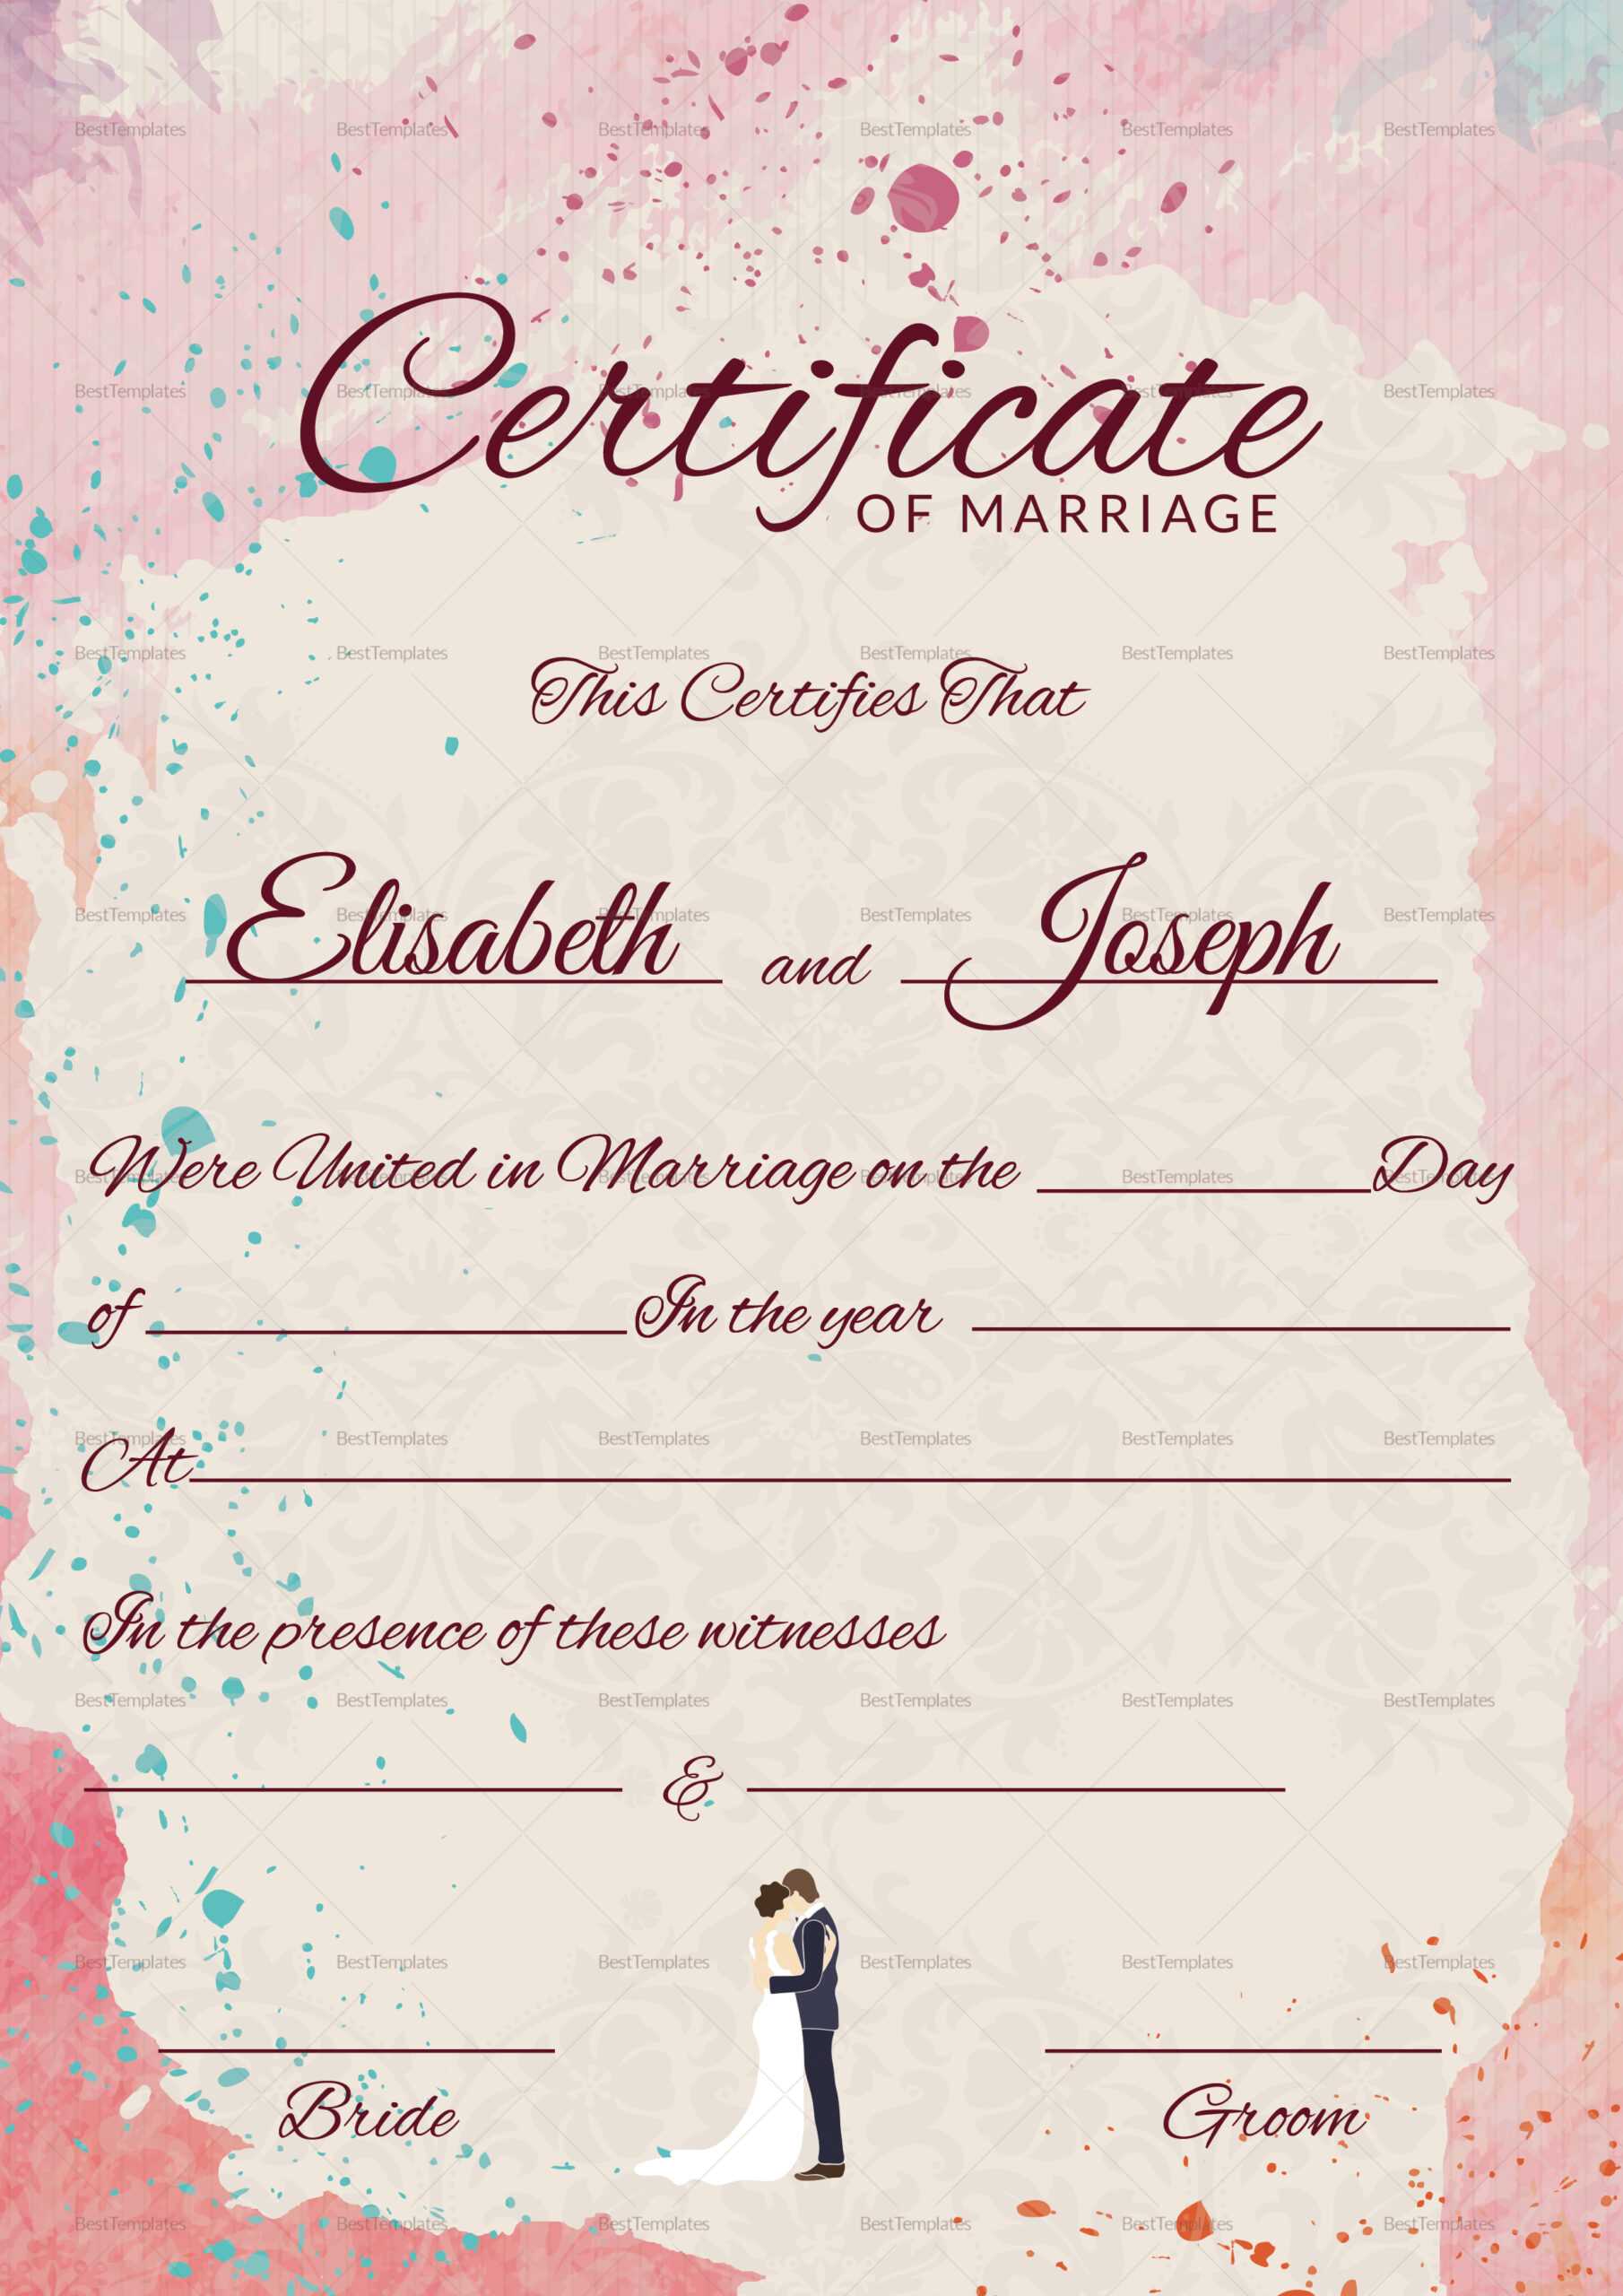 009 Marriage Certificate Template Ideas Beautiful Of For Certificate Of Marriage Template